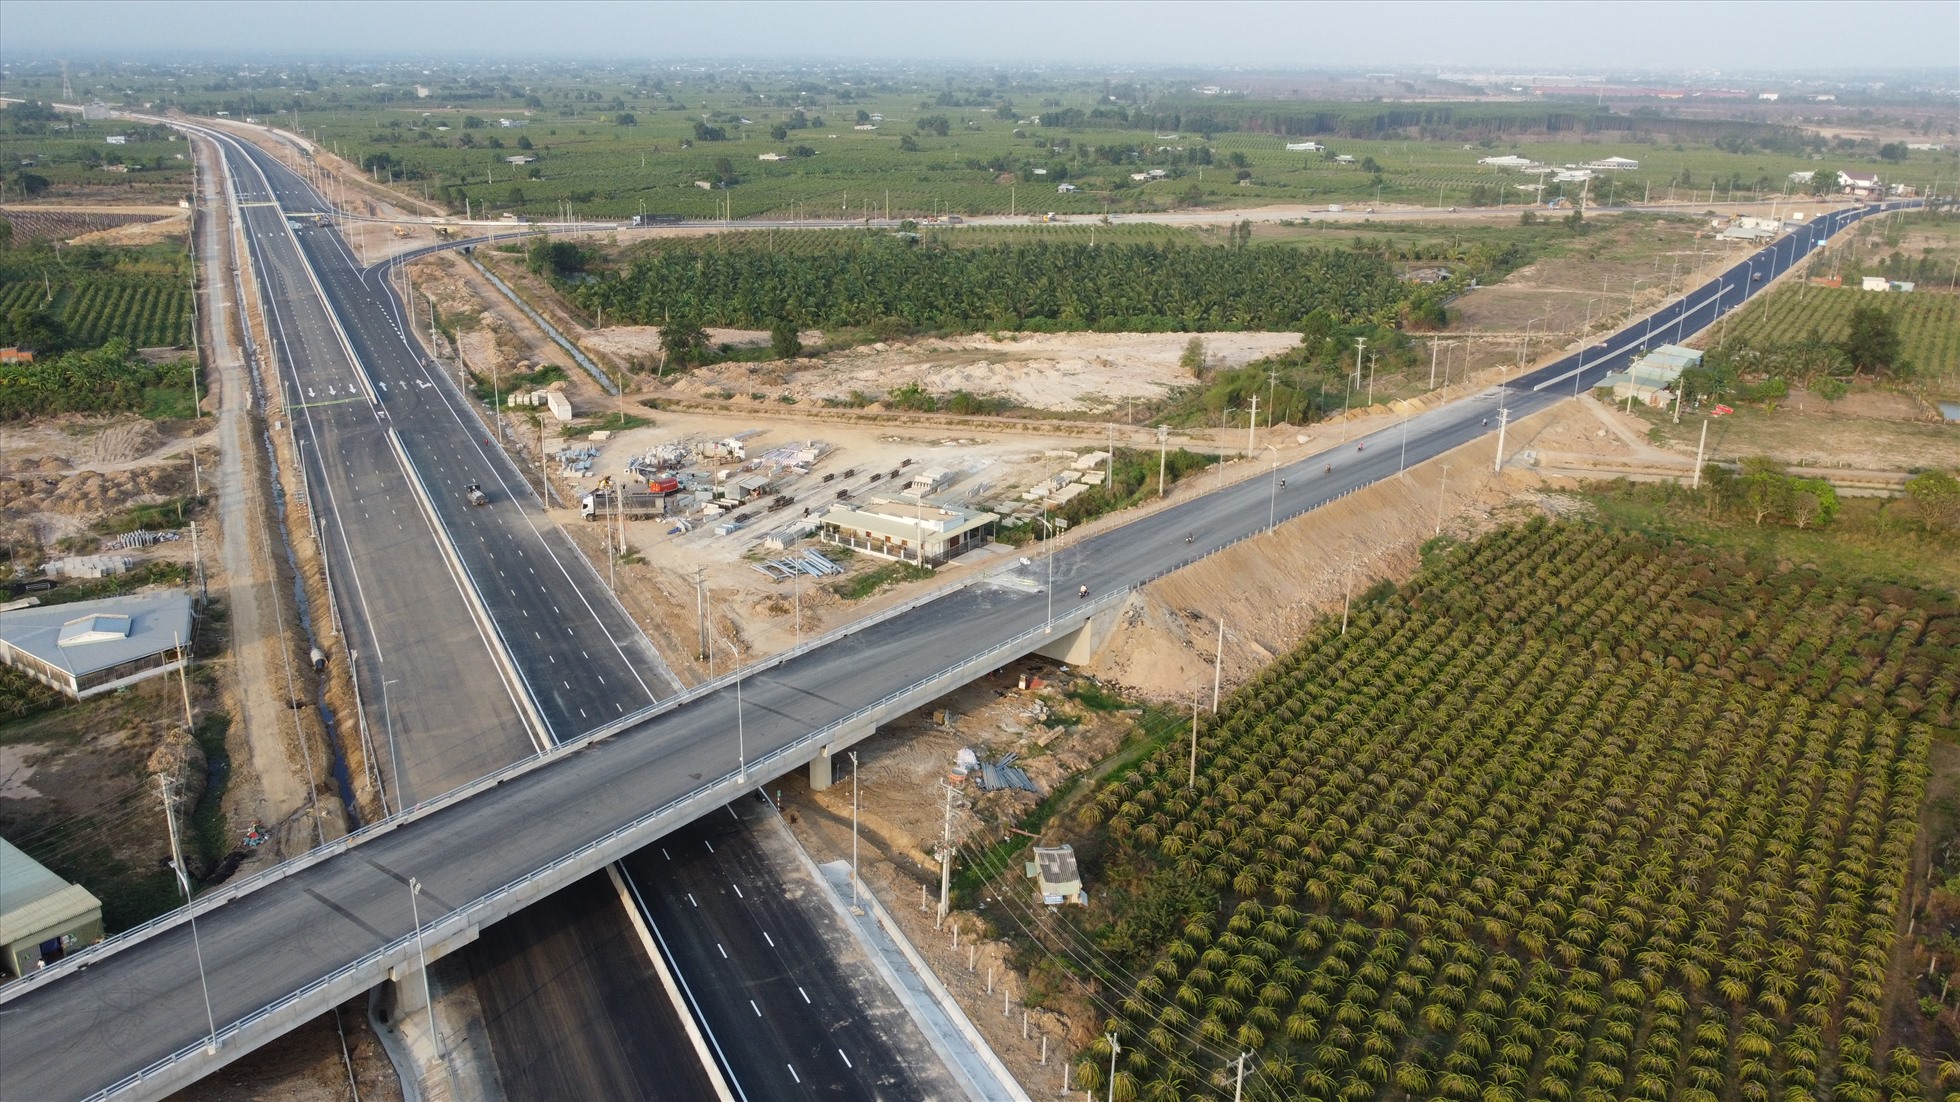 Nút giao tại km0 của cao tốc Phan Thiết - Dầu Giây nối vào đường dẫn ra QL1 tại xã Hàm Kiệm, Hàm Thuận Nam, Bình Thuận để đi Phan Thiết được vận hành cùng tuyến chính từ 29.4. Ảnh: Duy Tuấn